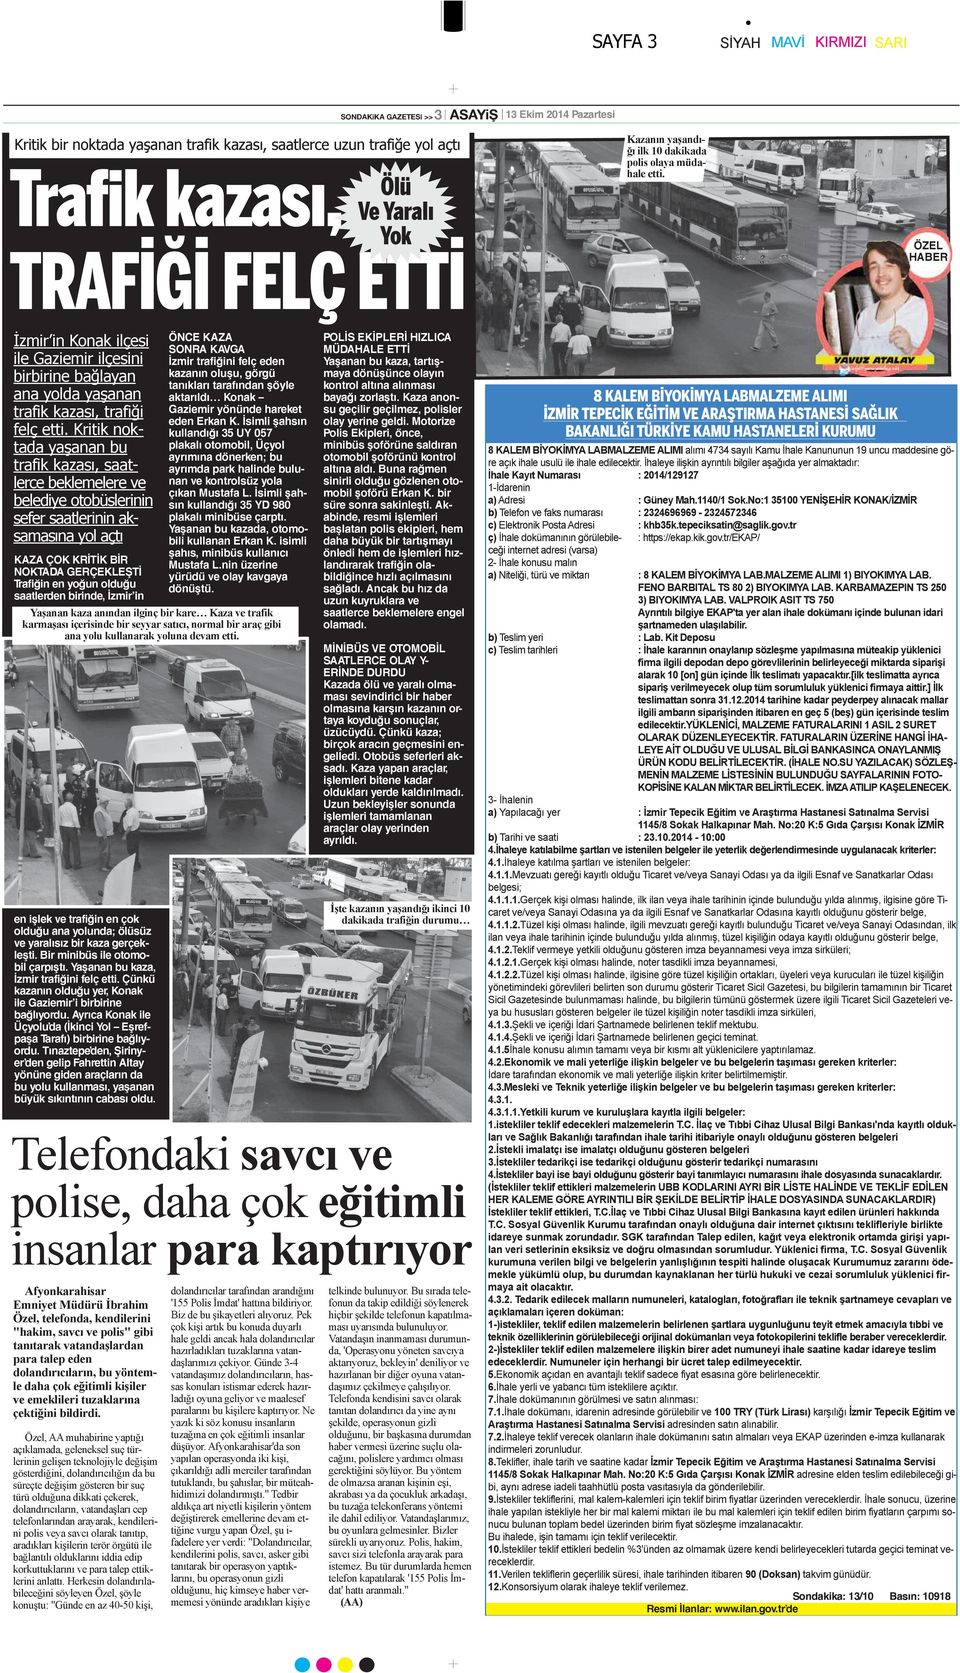 ÖZEL HABER İzmir in Konak ilçesi ile Gaziemir ilçesini birbirine bağlayan ana yolda yaşanan trafik kazası, trafiği felç etti.